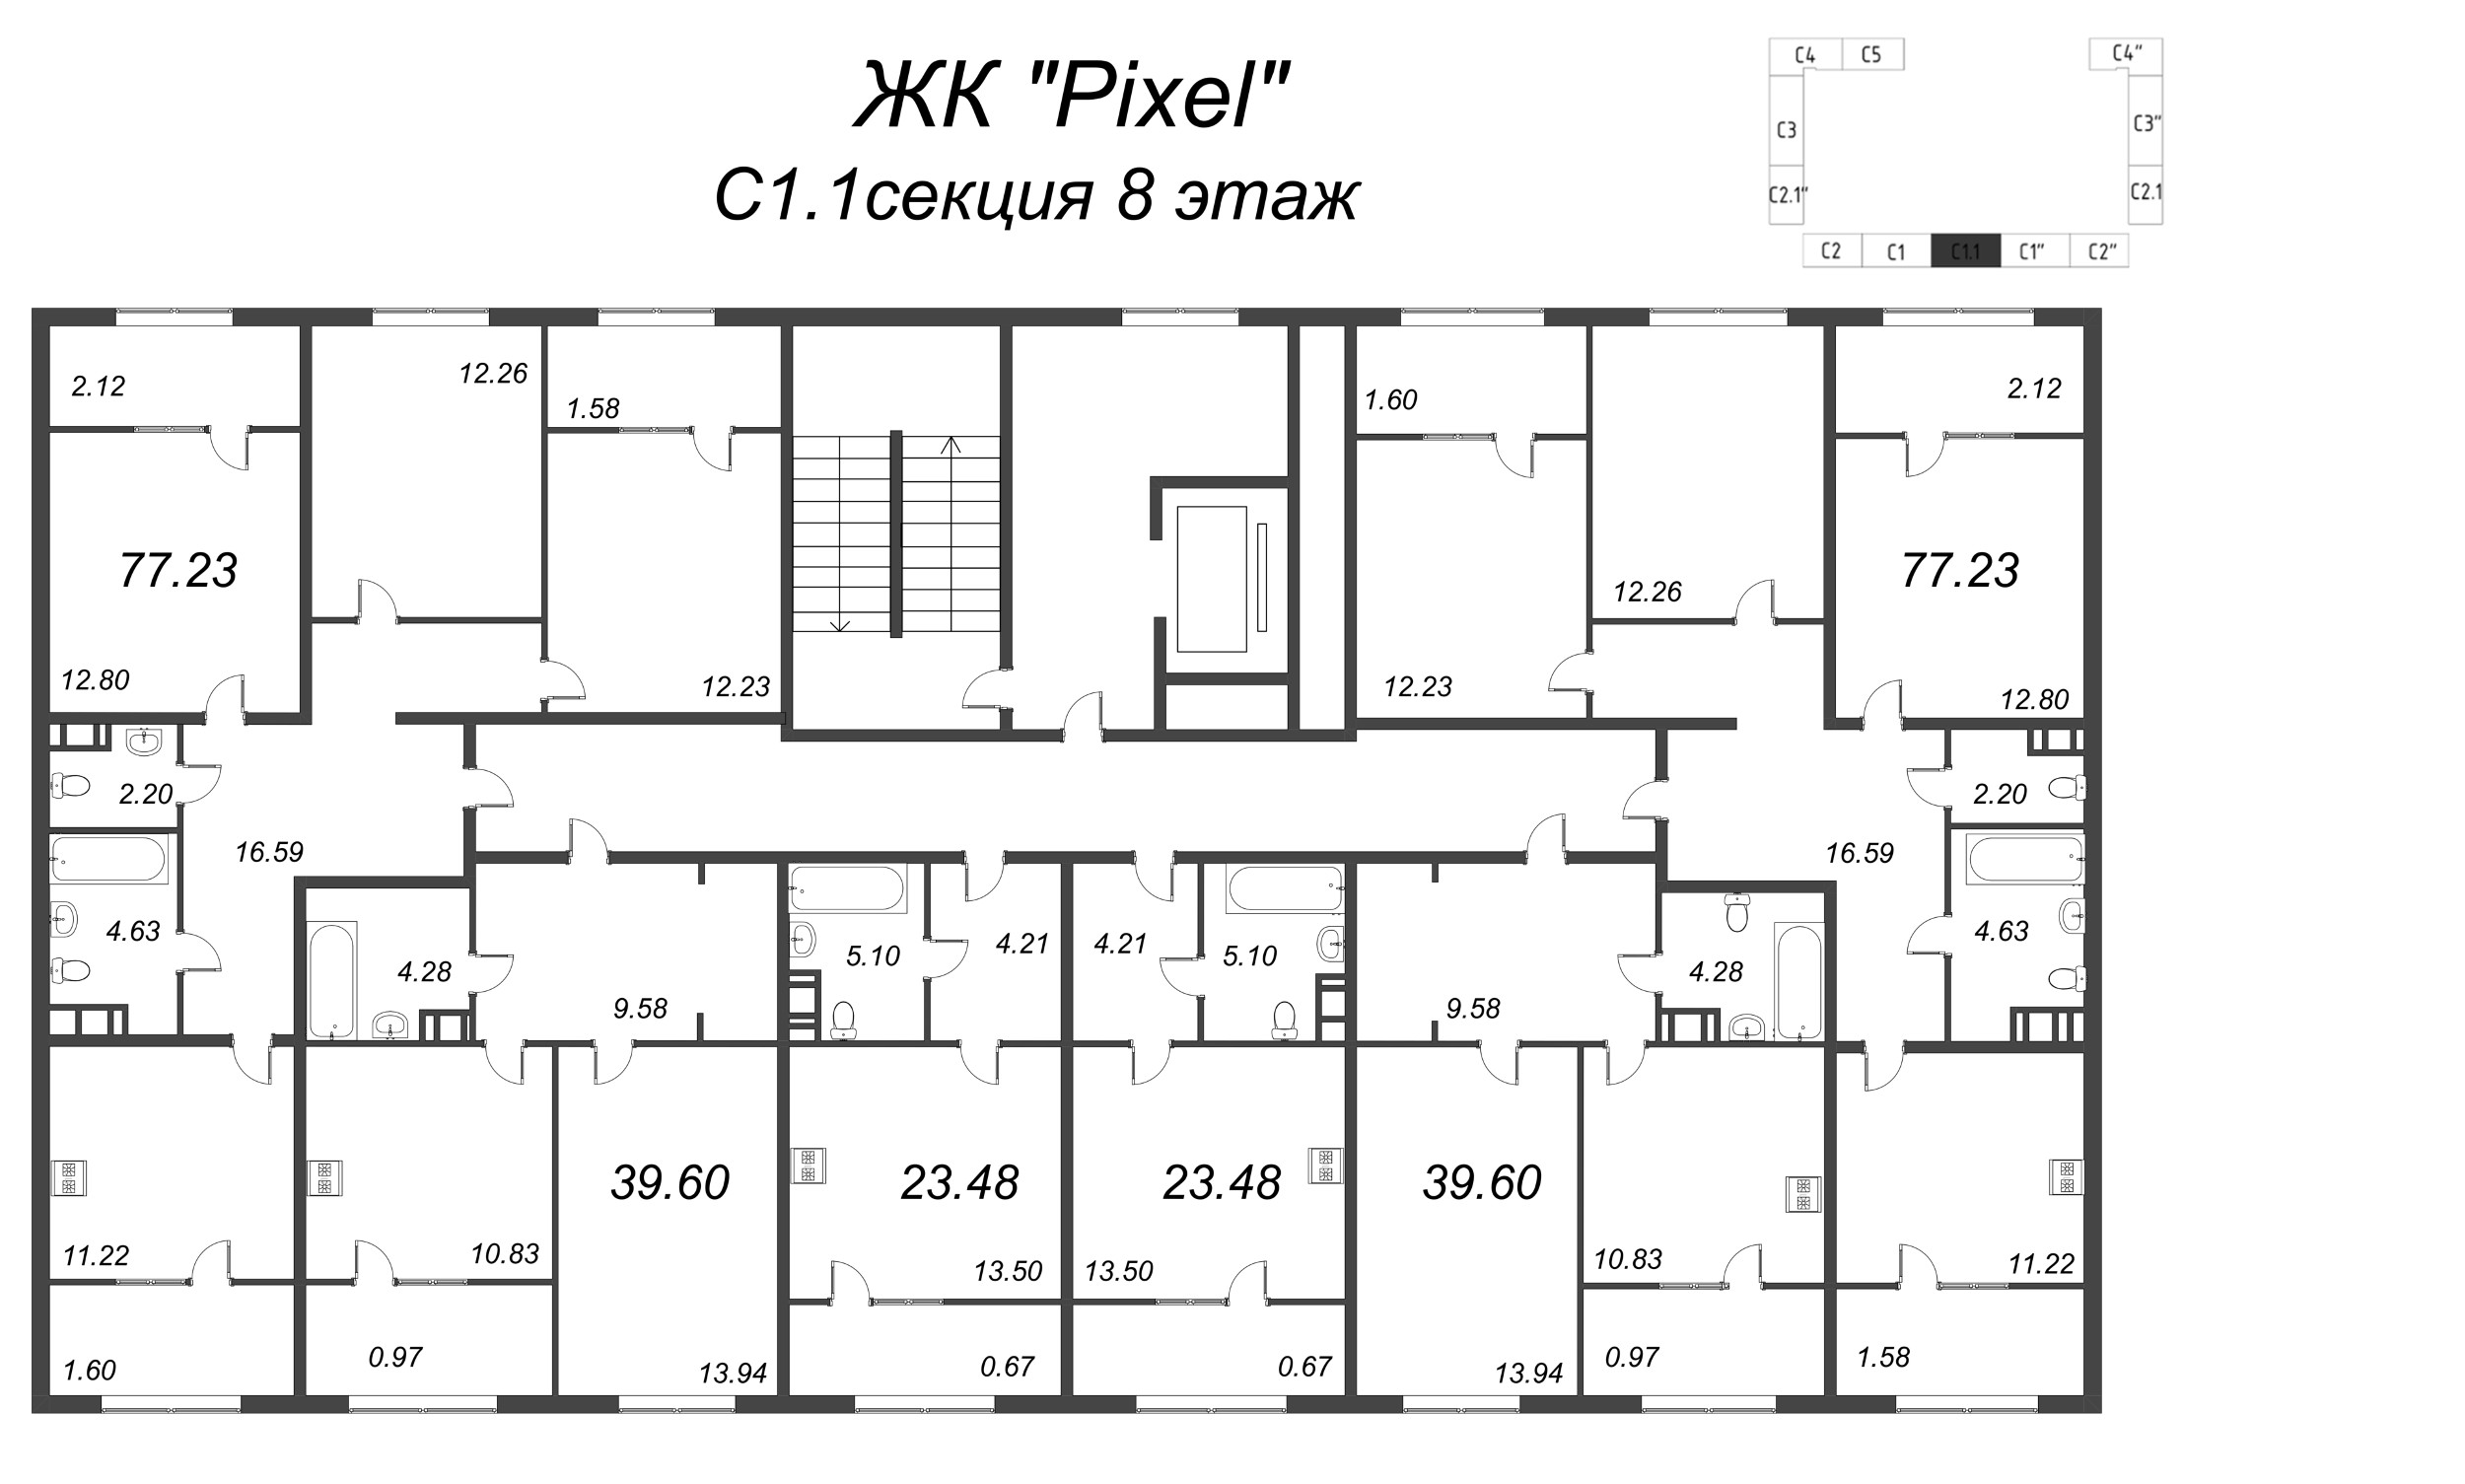 1-комнатная квартира, 39.6 м² в ЖК "Pixel" - планировка этажа